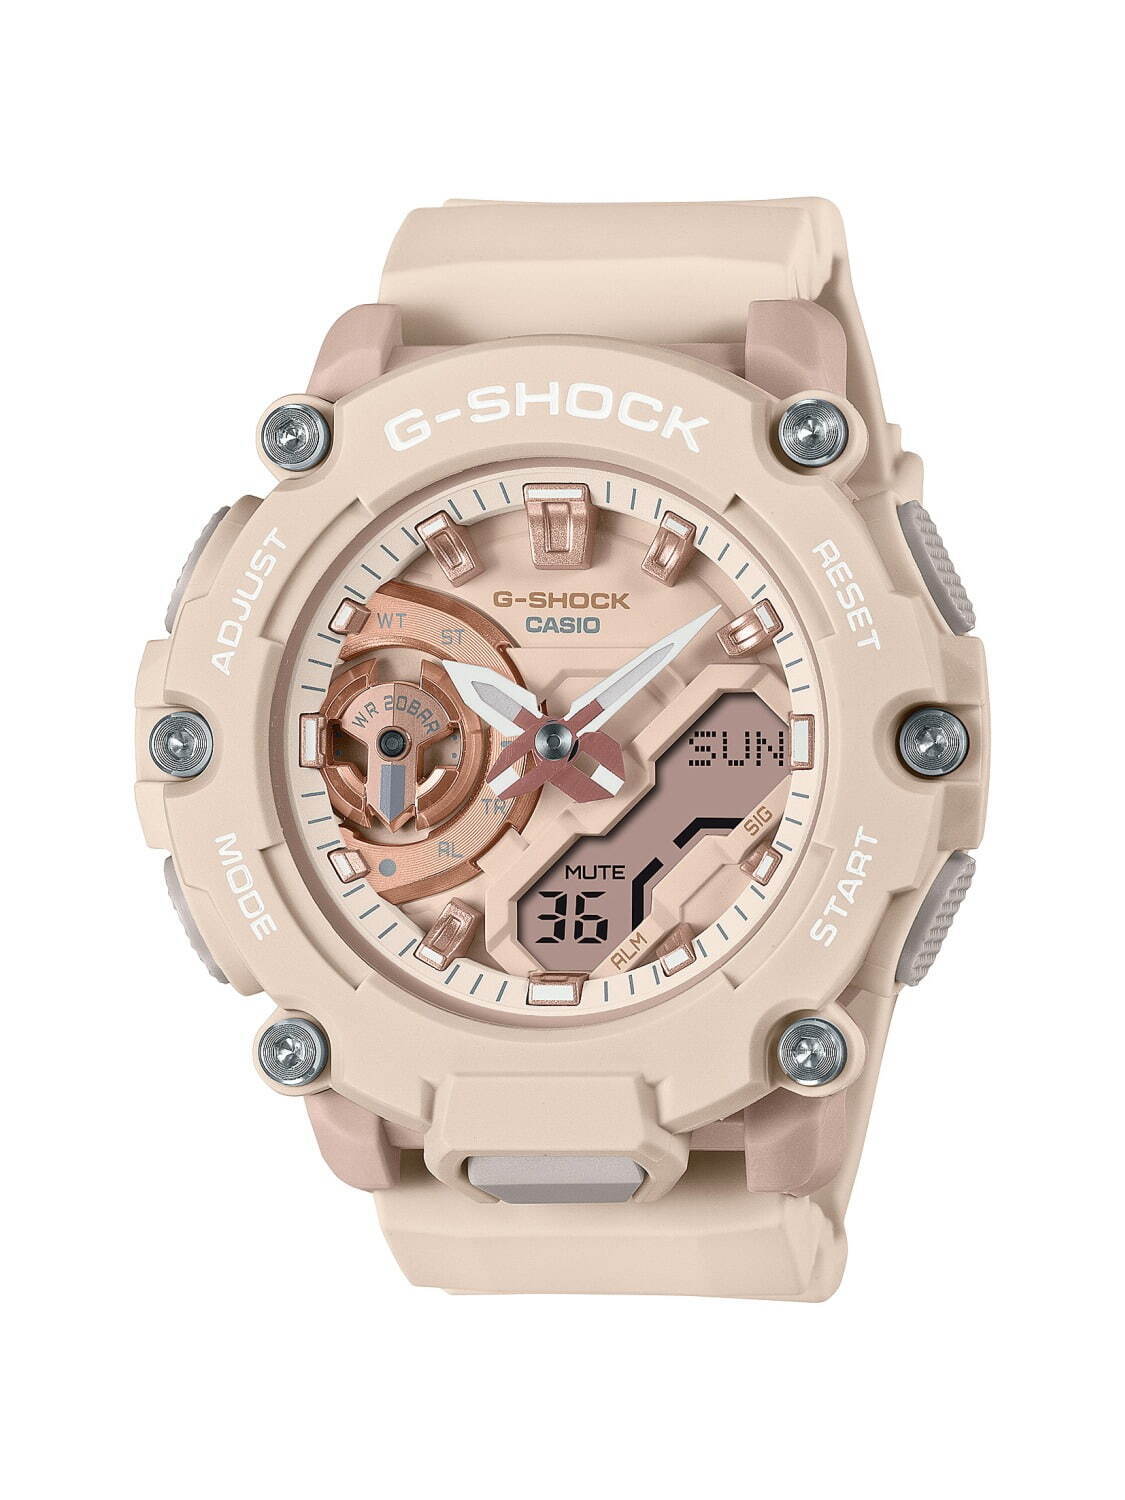 G-SHOCK"マット×メタリック"カラーのユニセックス腕時計